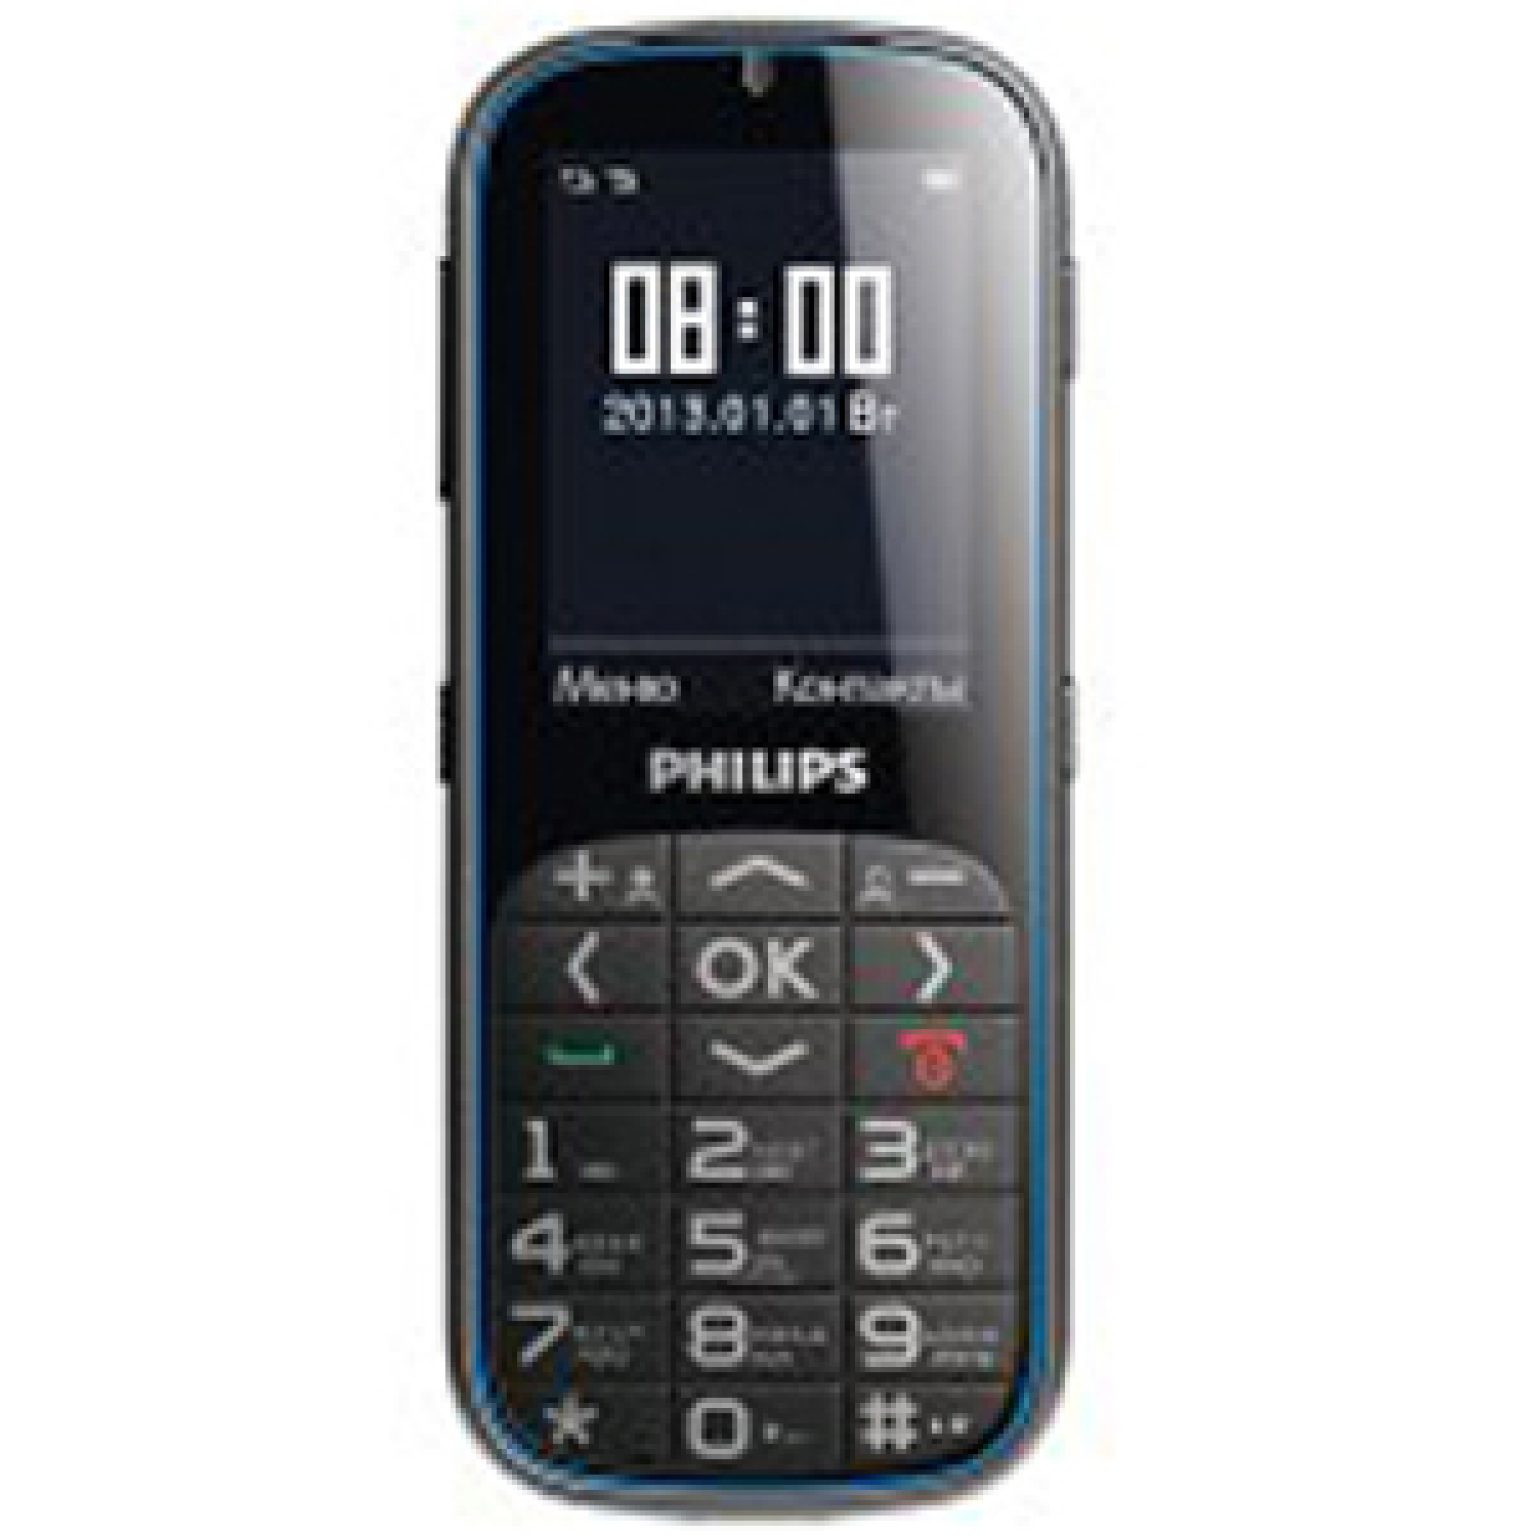 Филипс 2301. Philips x2301. Philips Xenium e2301. Бабушкофон Филипс. Philips Xenium e116.